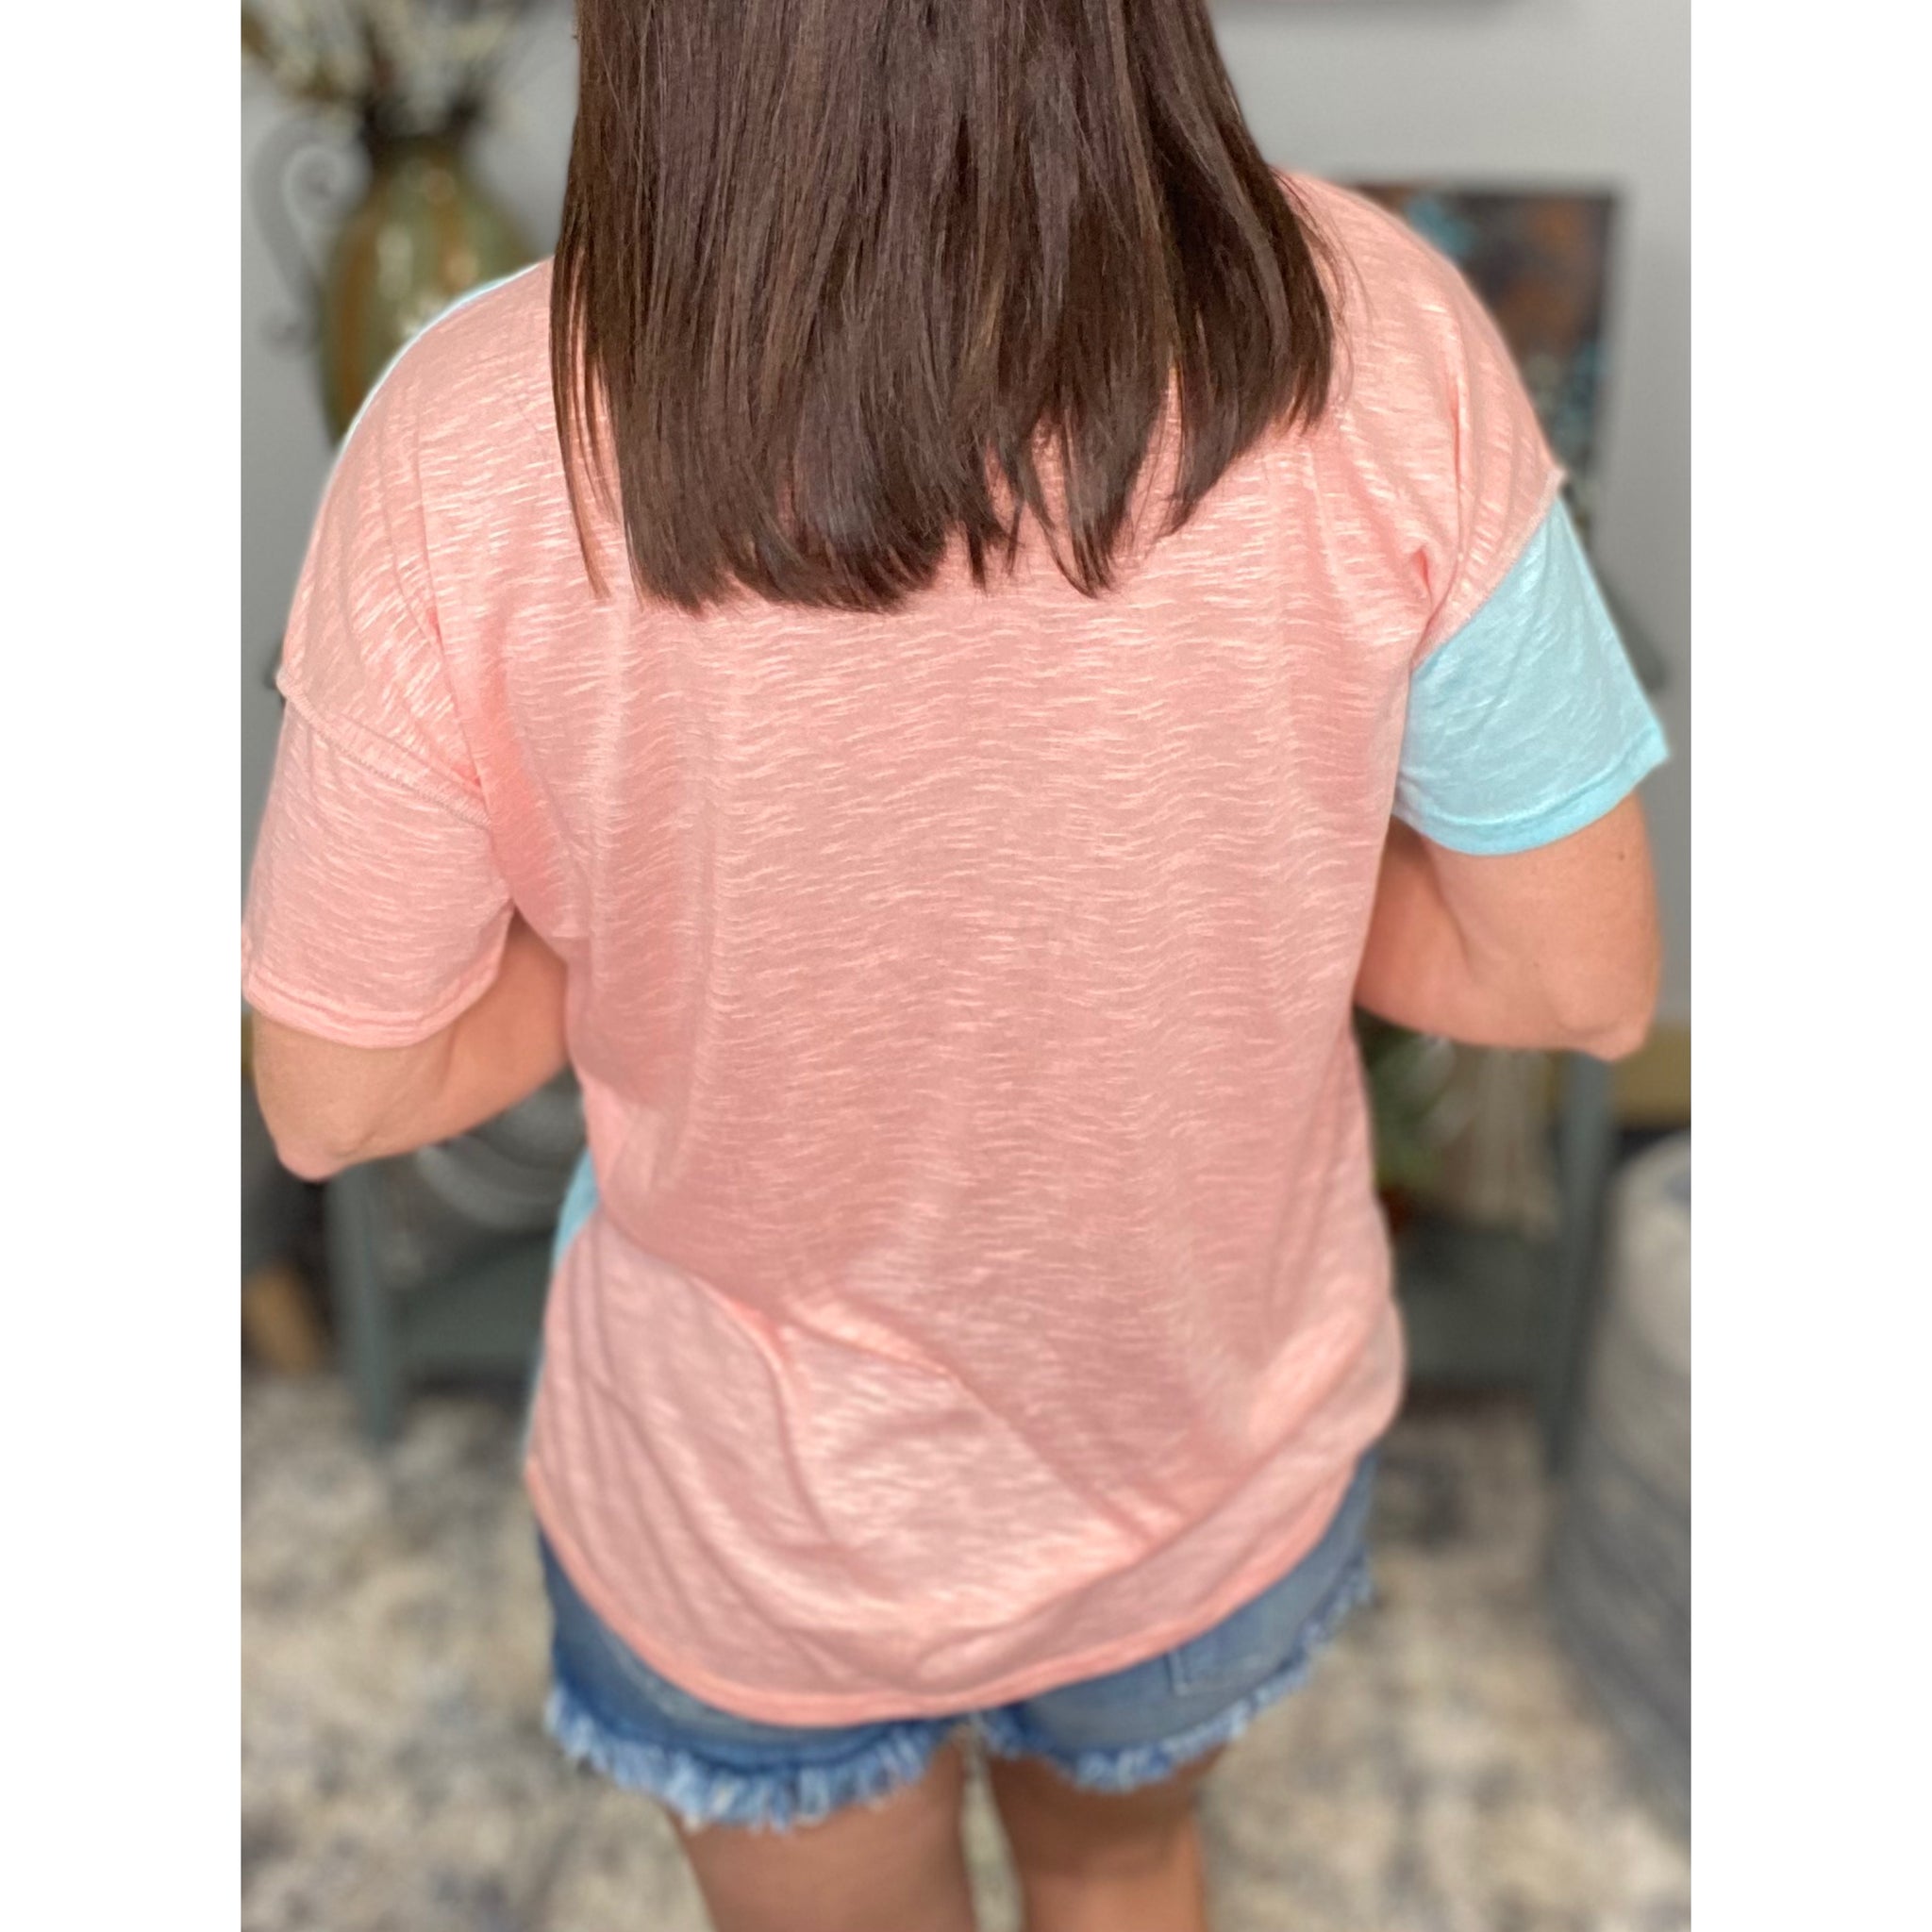 “Give It Up” Color Block Contrast Melange Round Neck Shirt Pink Mint S/M/L/XL